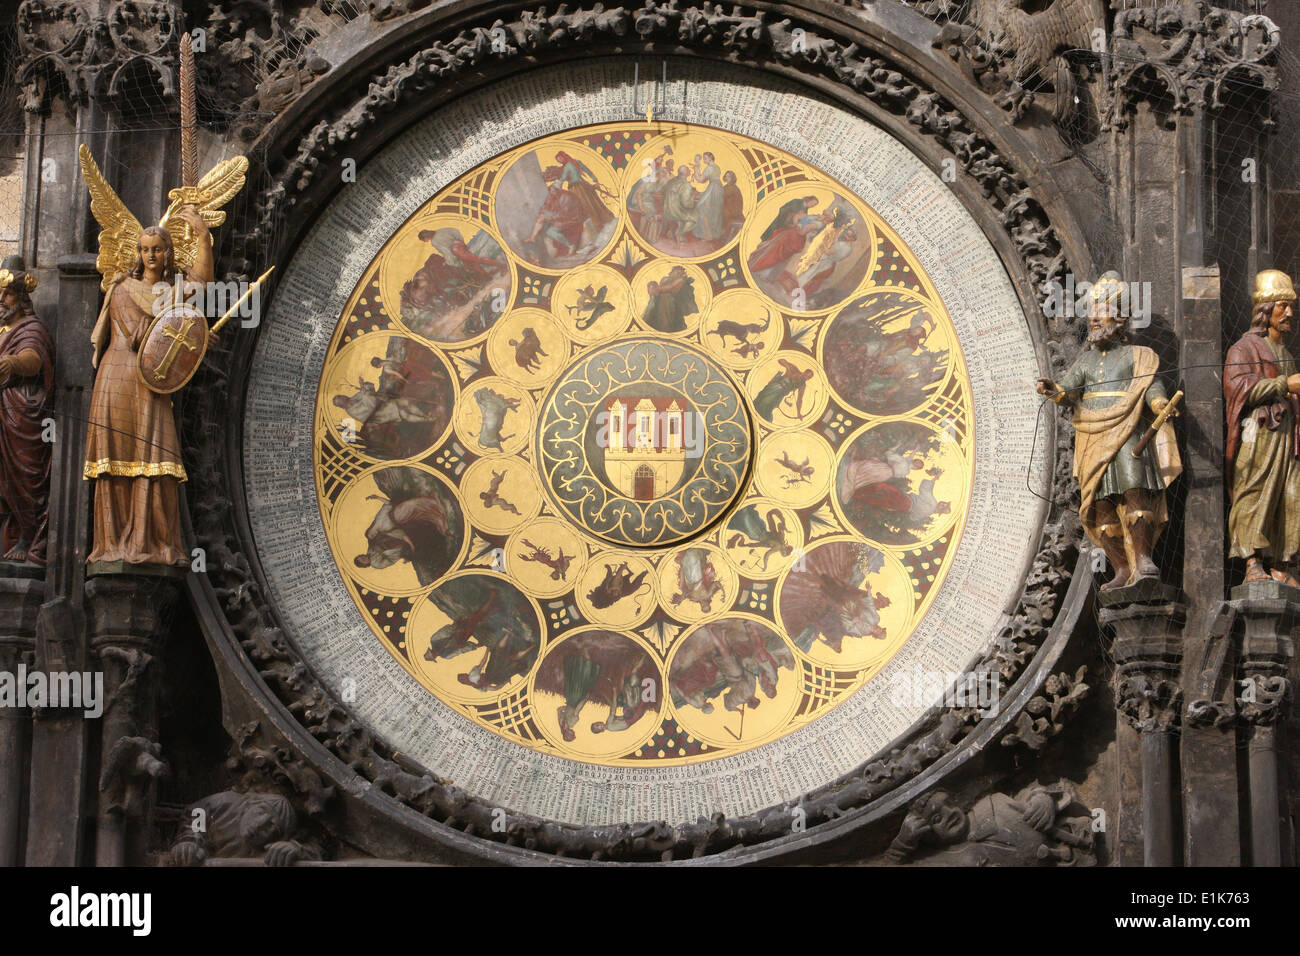 Ancien hôtel de ville de Prague horloge astronomique. 16e siècle. Banque D'Images